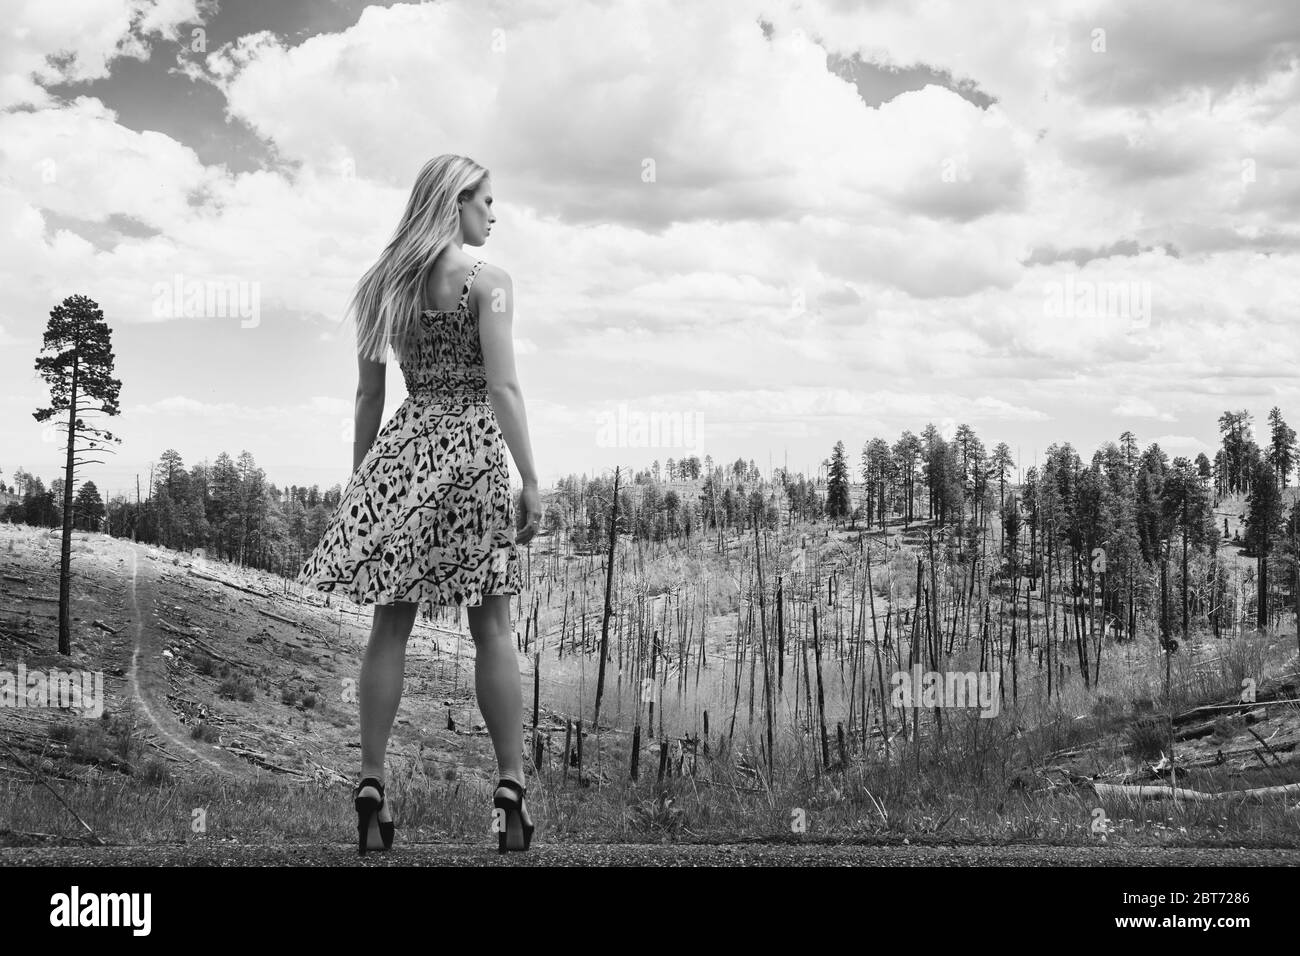 Das hübsche blonde Mädchen blickt über den verbrannten Kaibab Forest in Arizona, USA; sie trägt ein leichtes Sommerkleid, das im Wind geblasen wird. S/W Stockfoto